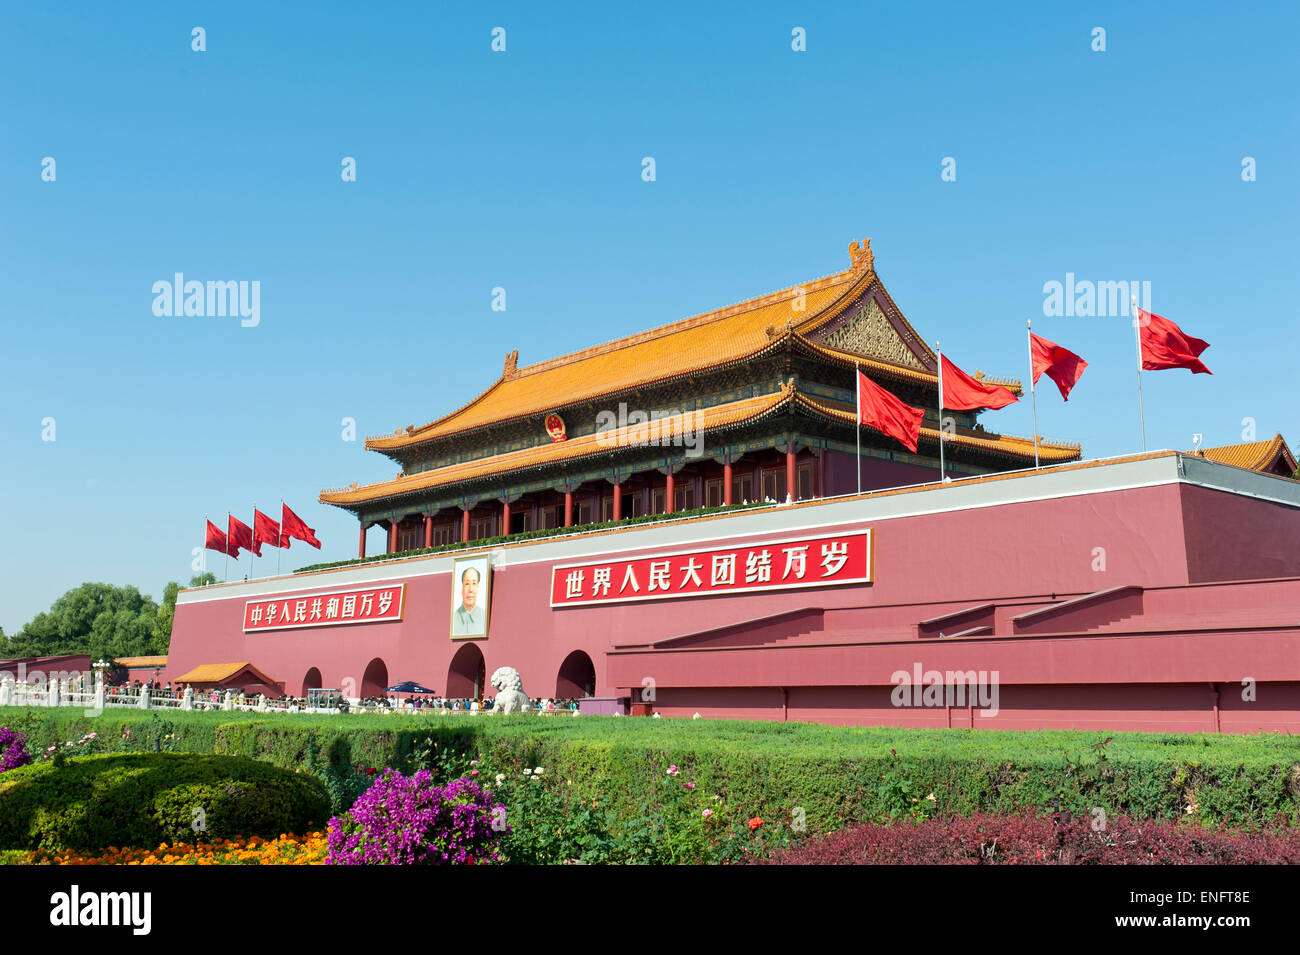 Portrait de Tiananmen Mao Zedong, porte de la paix céleste, la Place Tiananmen, Beijing, République populaire de Chine Banque D'Images